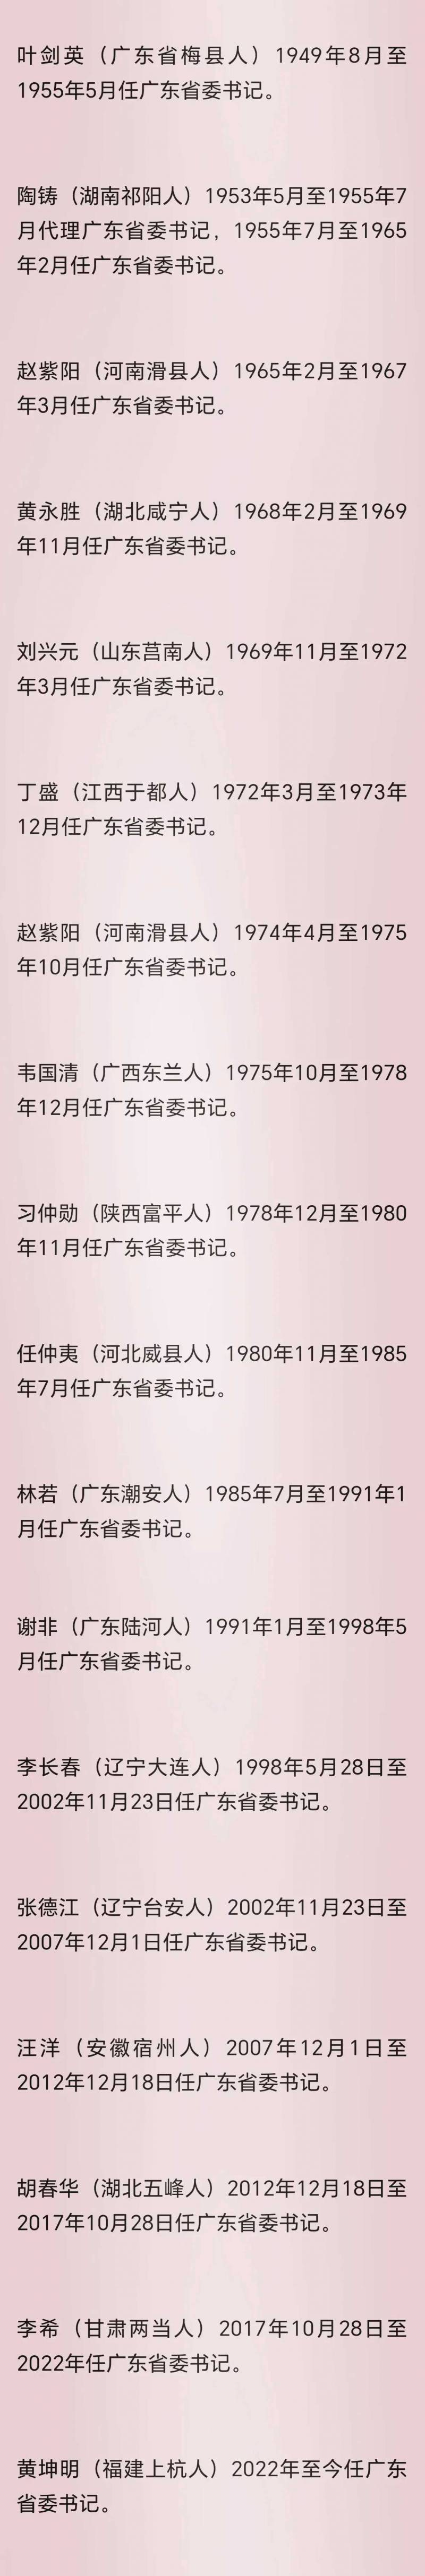 历届广东省委书记详览，从1949年至今的领导人物变迁